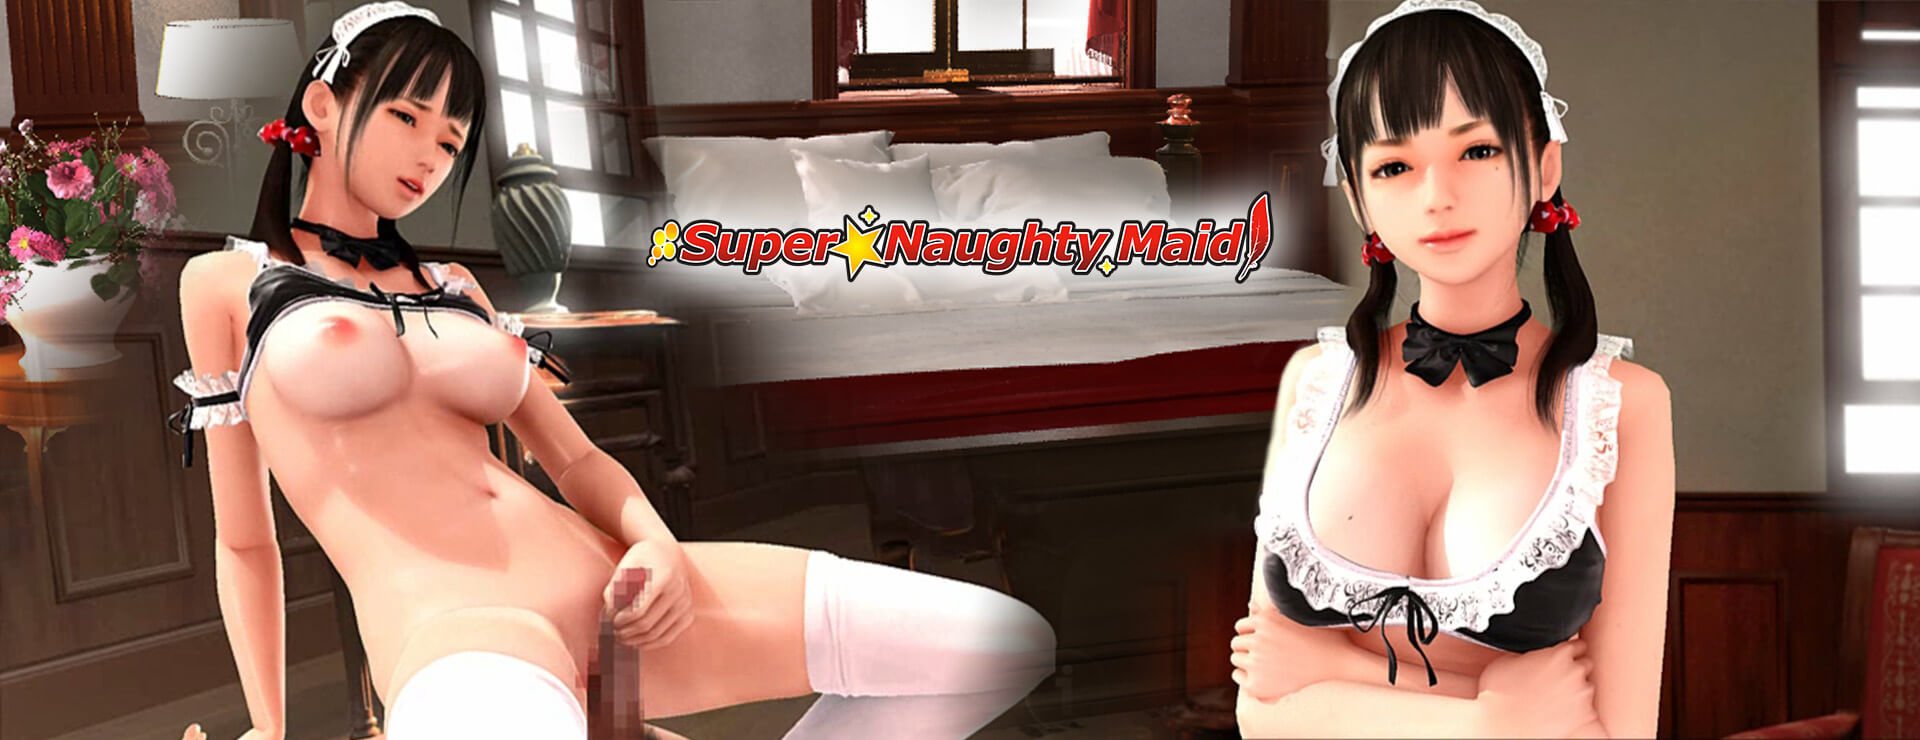 Super Naughty Maid 1 - シミュレーション ゲーム